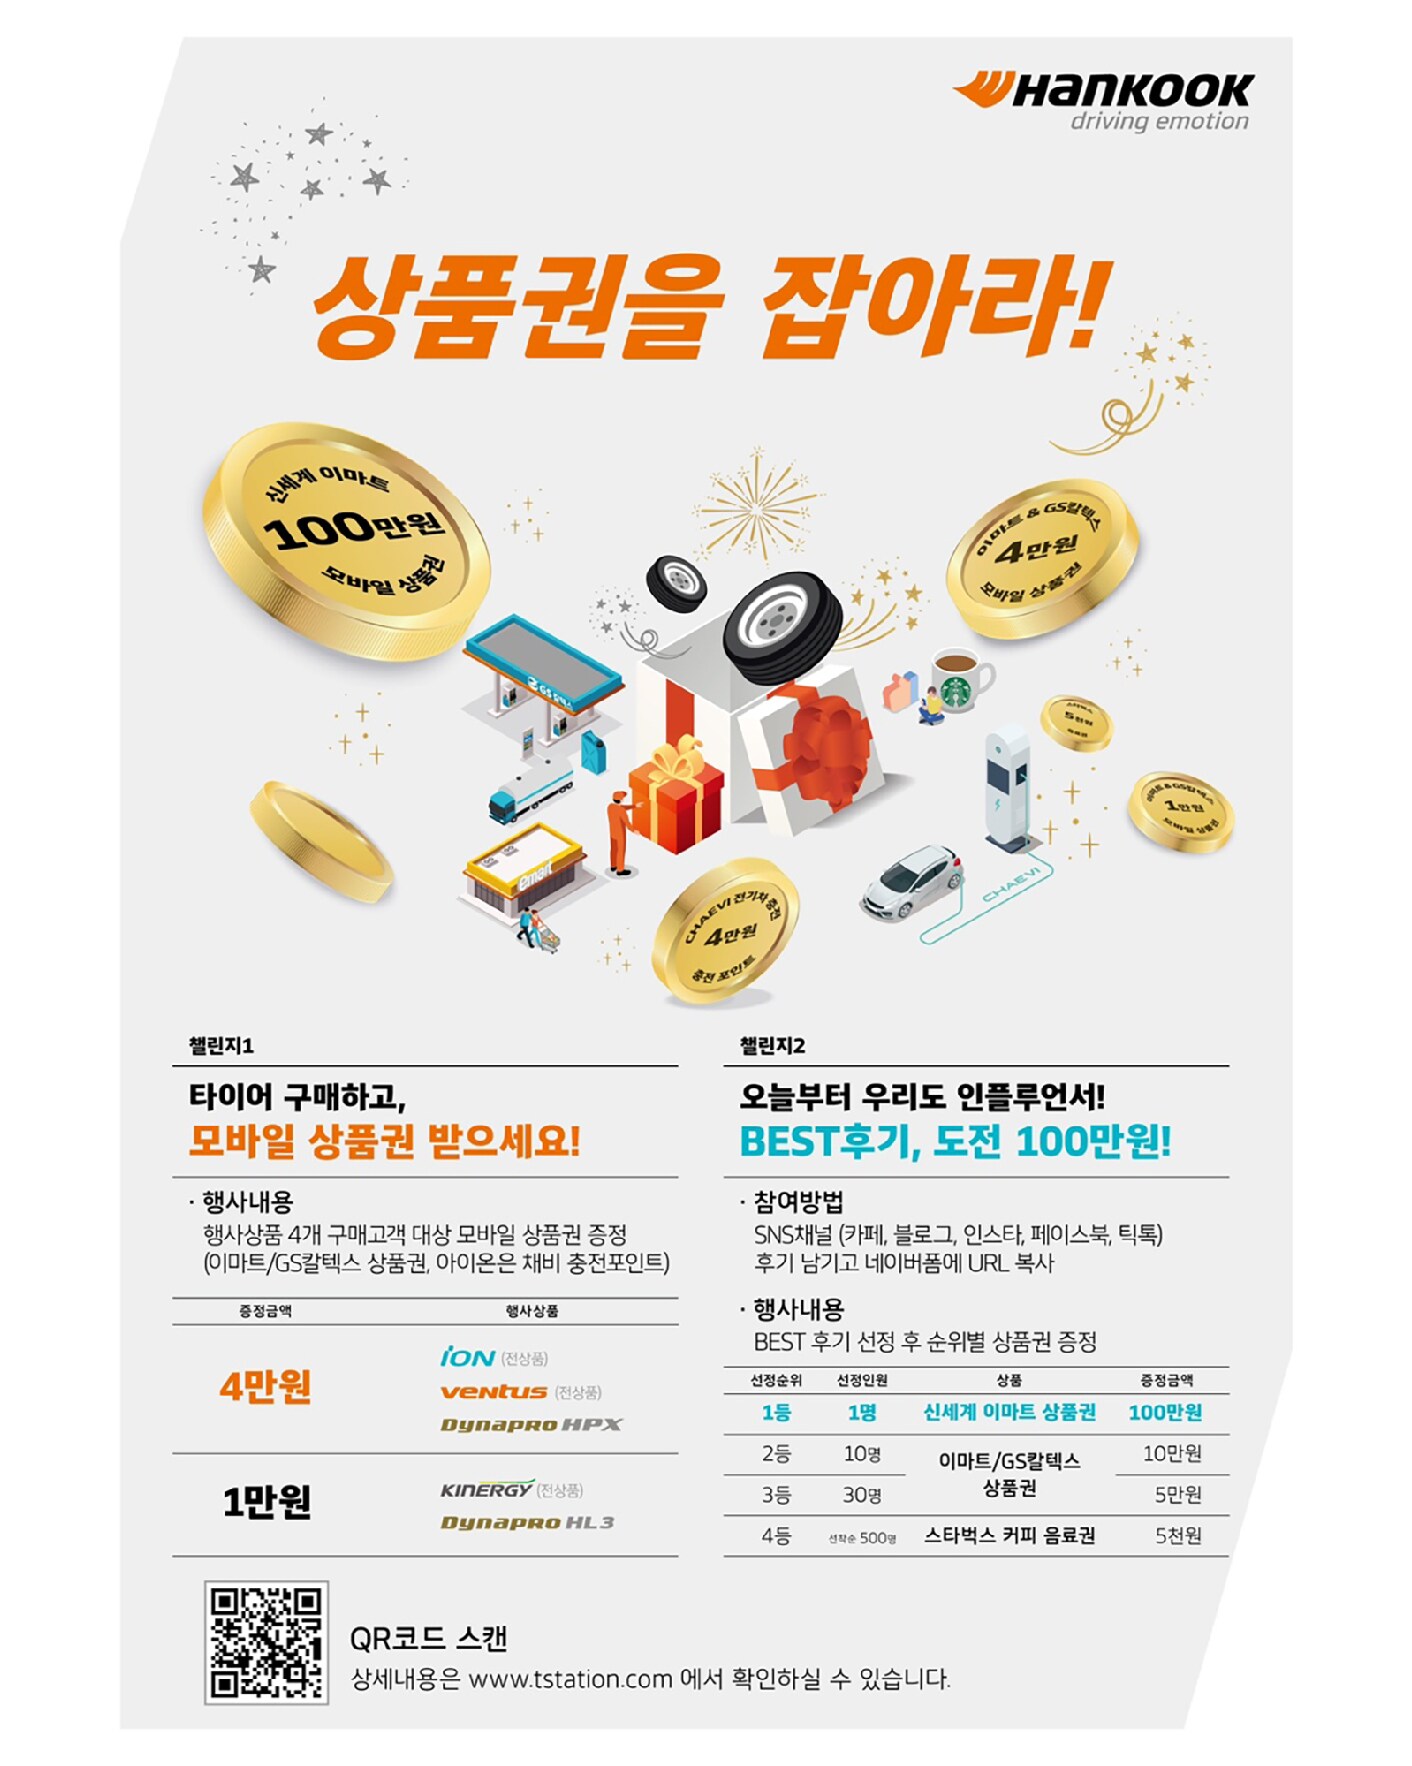 한국타이어 구매하고 푸짐한 경품의 행운 잡자